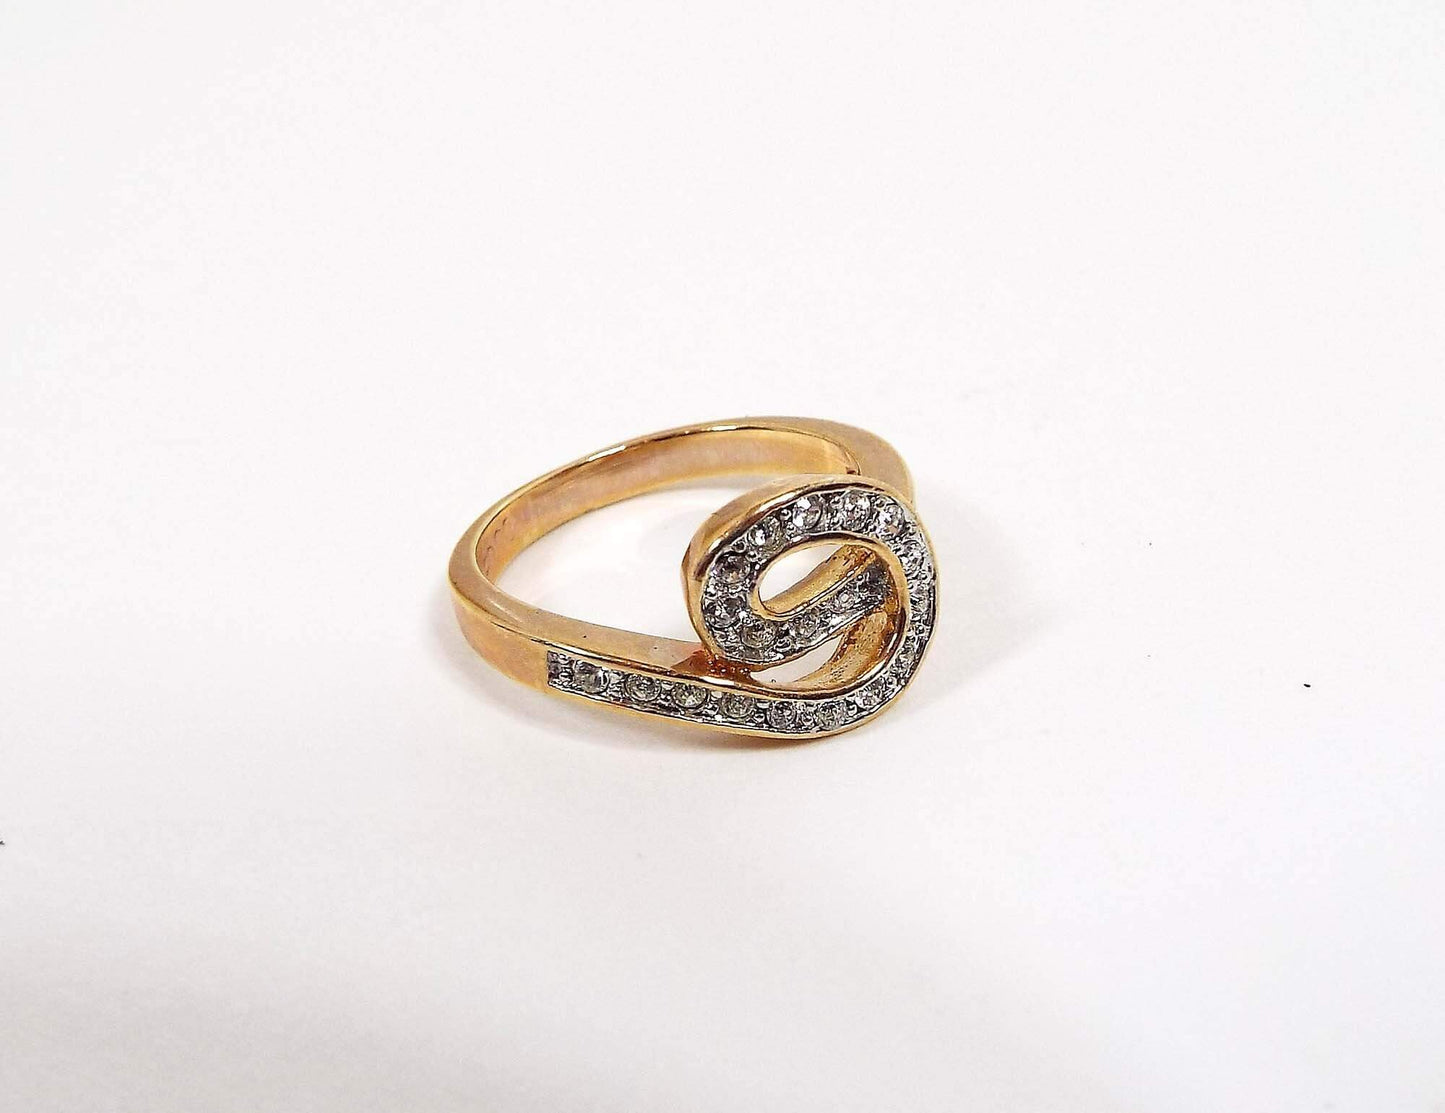 Edco Vintage Rhinestone Ring